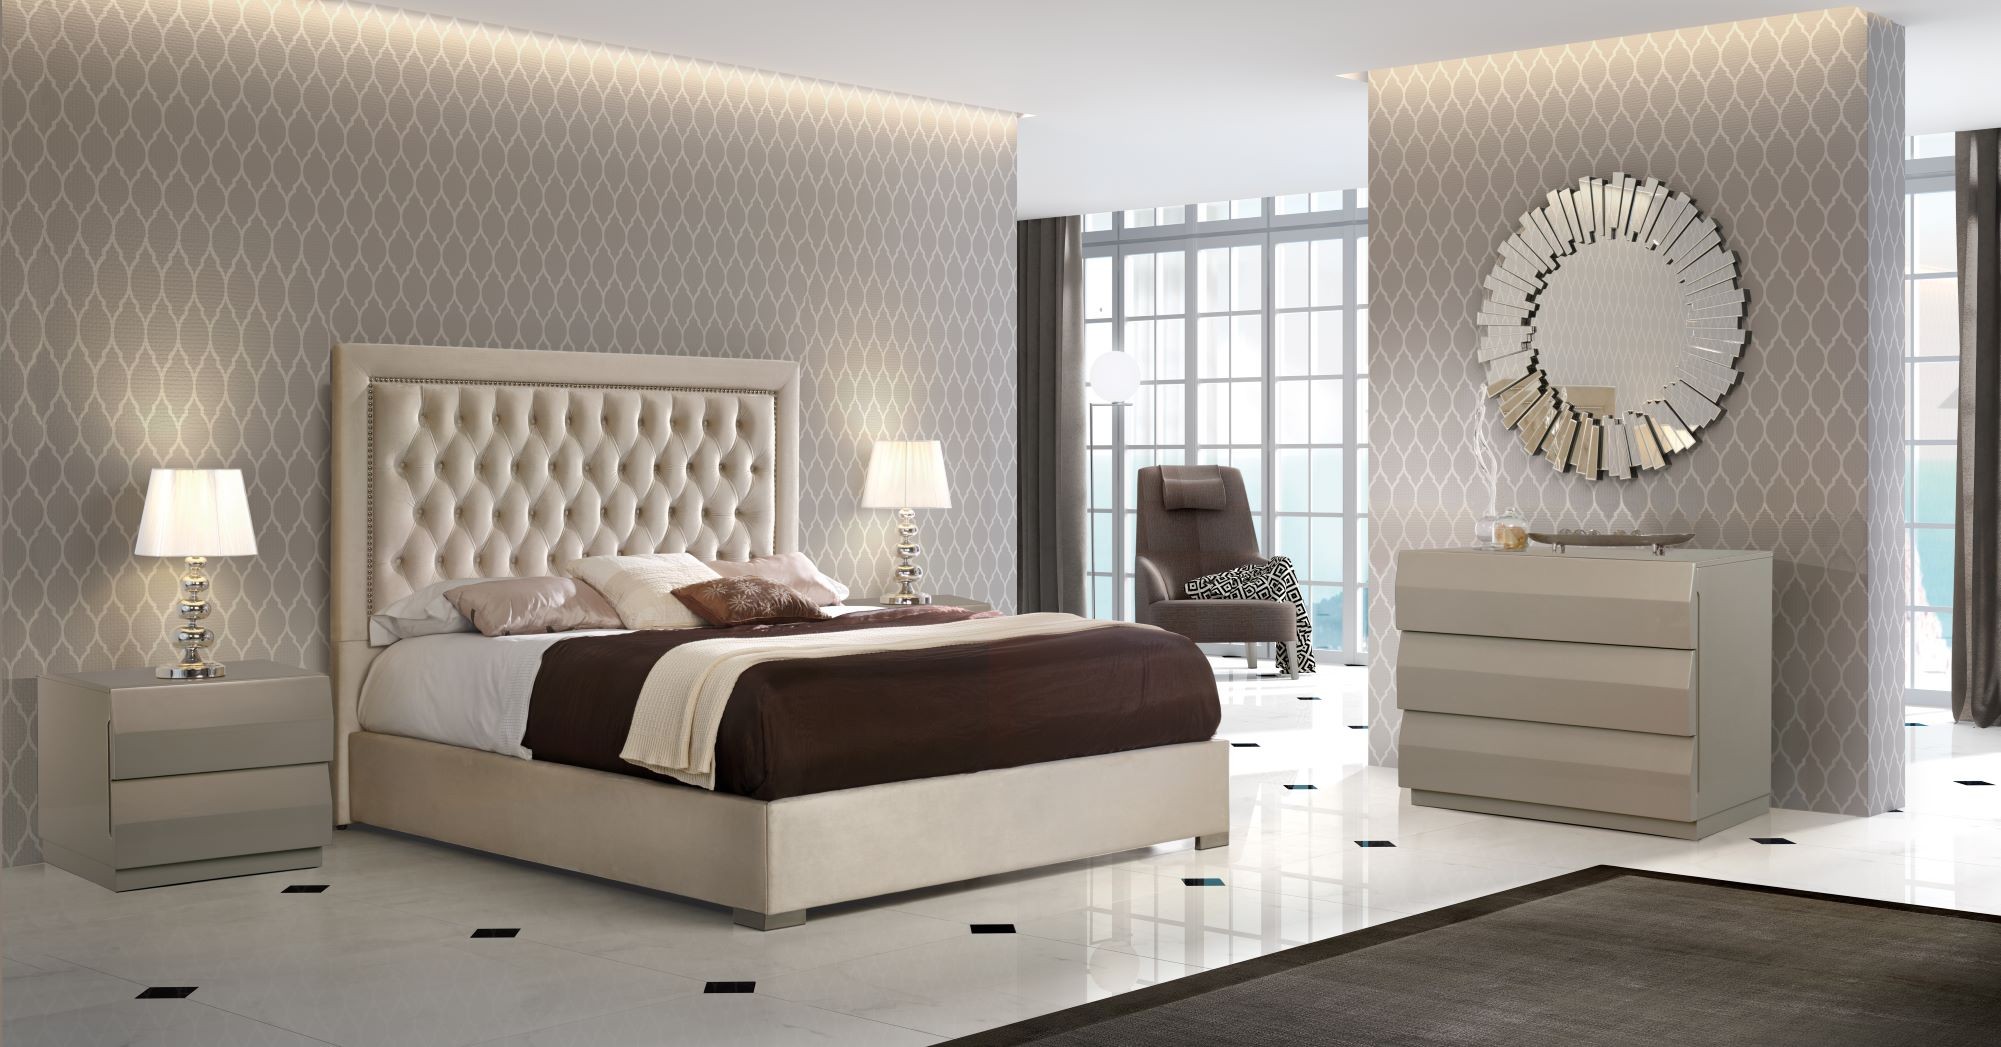 Estila Chesterfield luxusní manželská postel Adagio s čalouněním as kovovými nožičkami 150-180cm